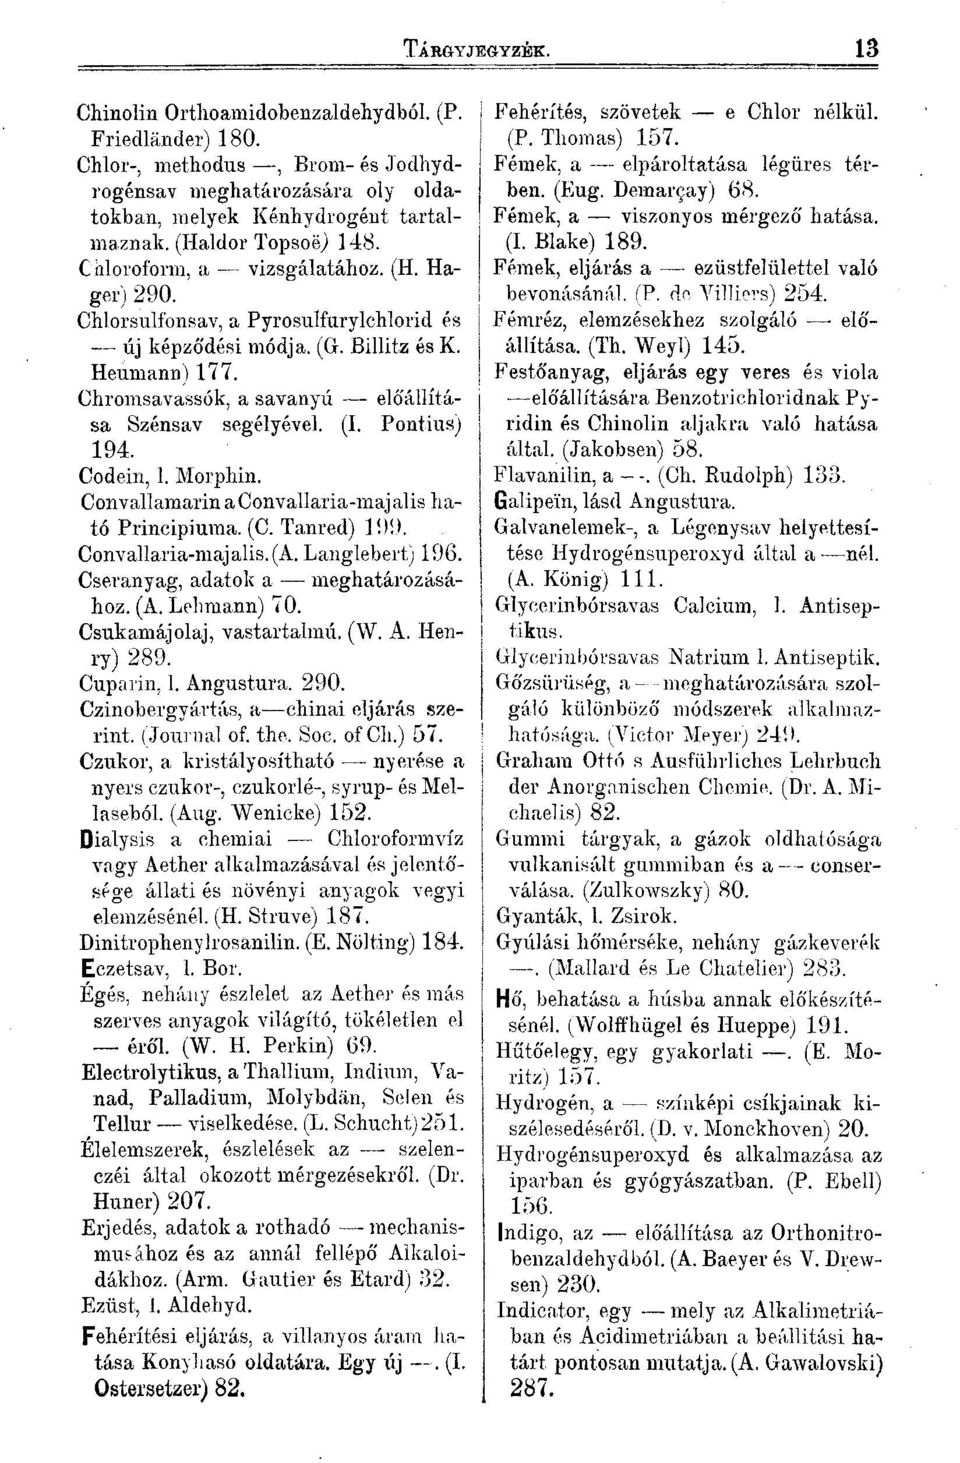 Chromsavassók, a savanyú előállítása Szénsav segélyével. (I. Pontius) 194. Codein, l. Morphin. Convallamarin a Convallaria-majalis ható Principiuma. (C. Tanred) 199. Convallaria-majalis.(A.